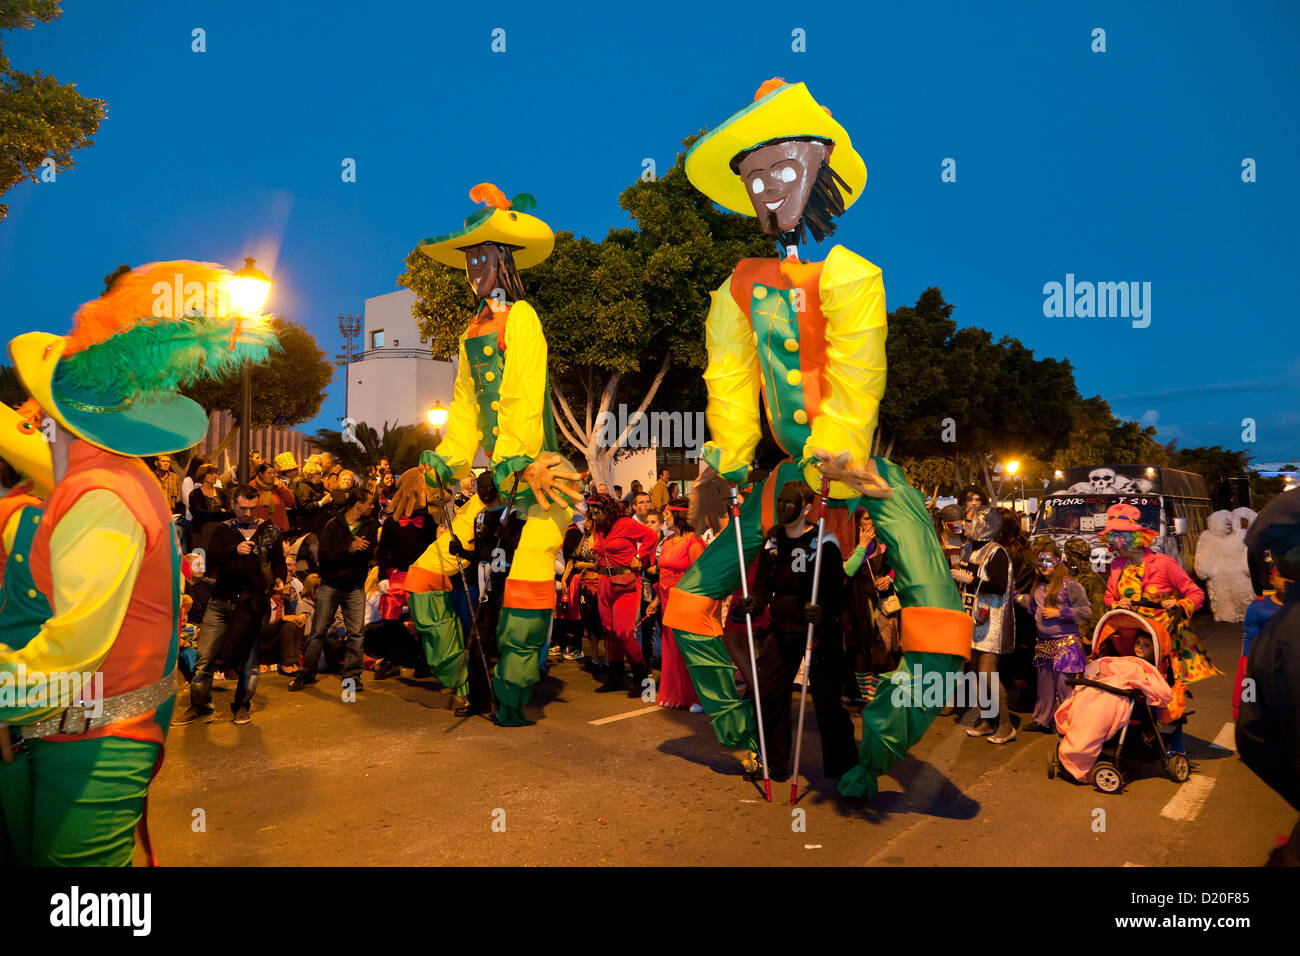 Desfile de Carnaval en la noche, Arrecife, Lanzarote, Islas Canarias, España, Europa Foto de stock